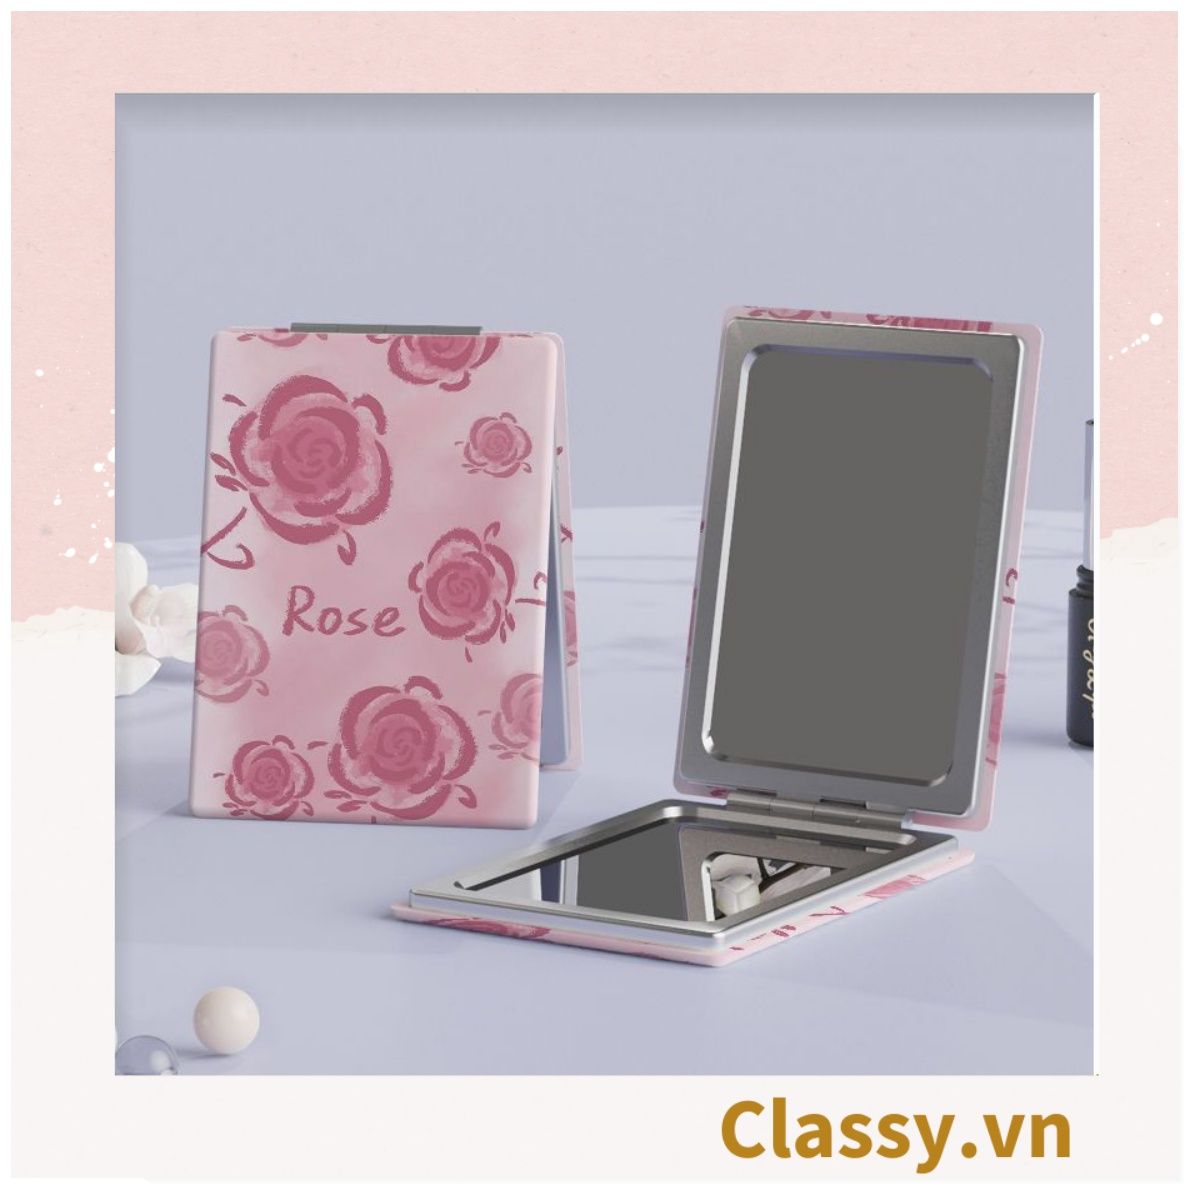  Gương trang điểm cầm tay mini 2 mặt bỏ túi kèm lược, Gương cầm tay mini Hàn Quốc siêu cute, Gương Vintage Hoa hồng PK569 